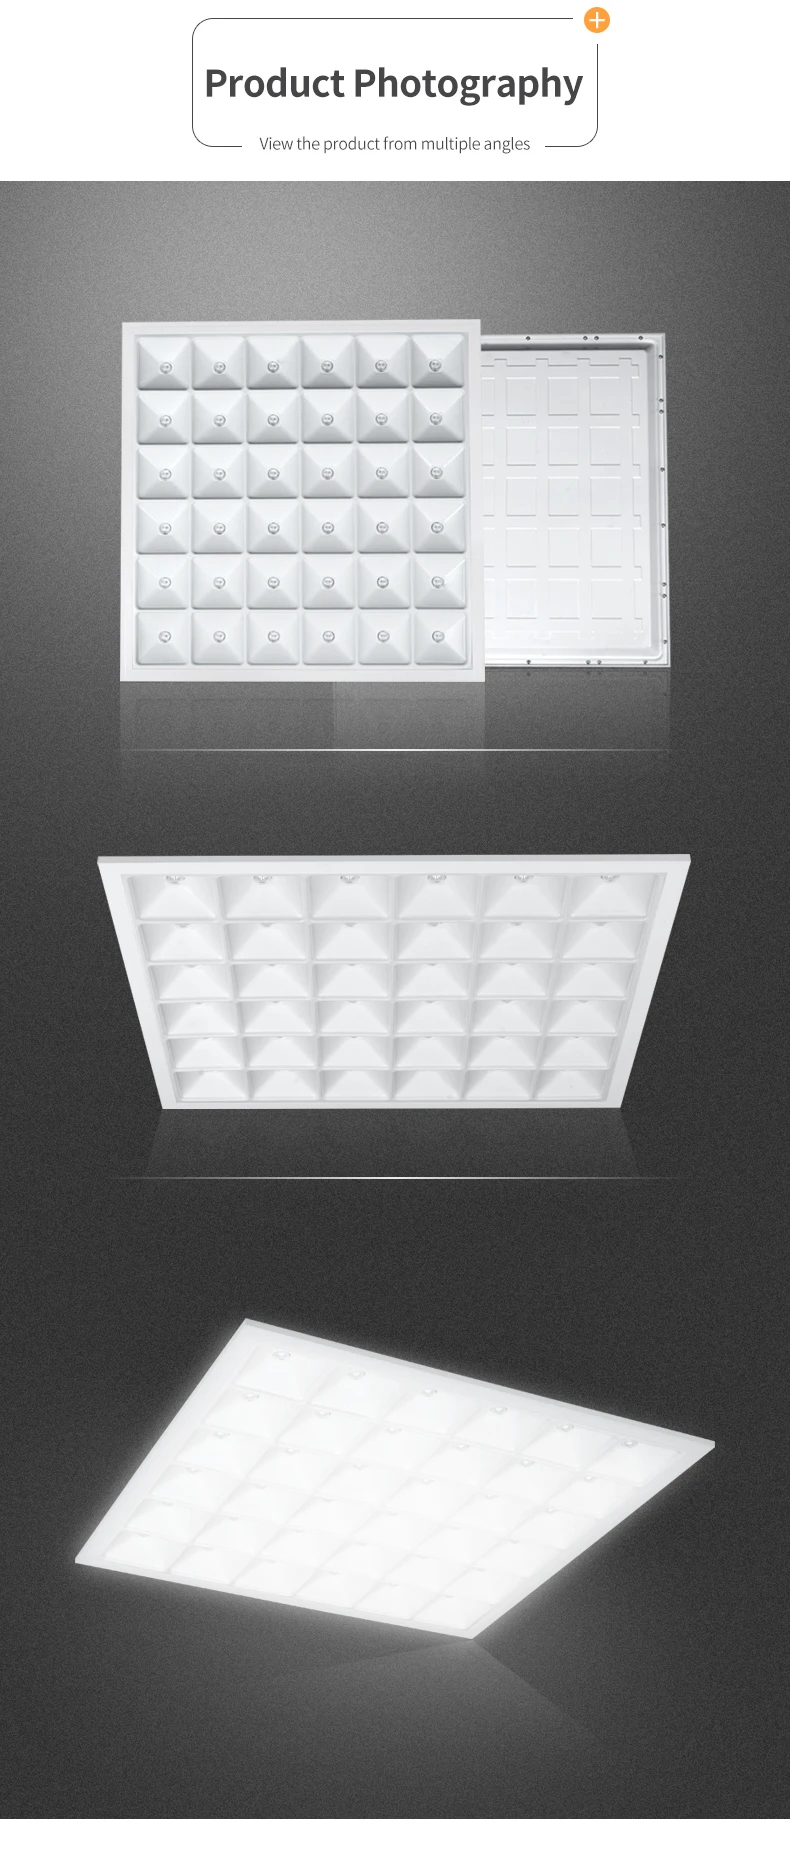 ALLTOP 2020 new design ceiling lighting PC 36w led panel light